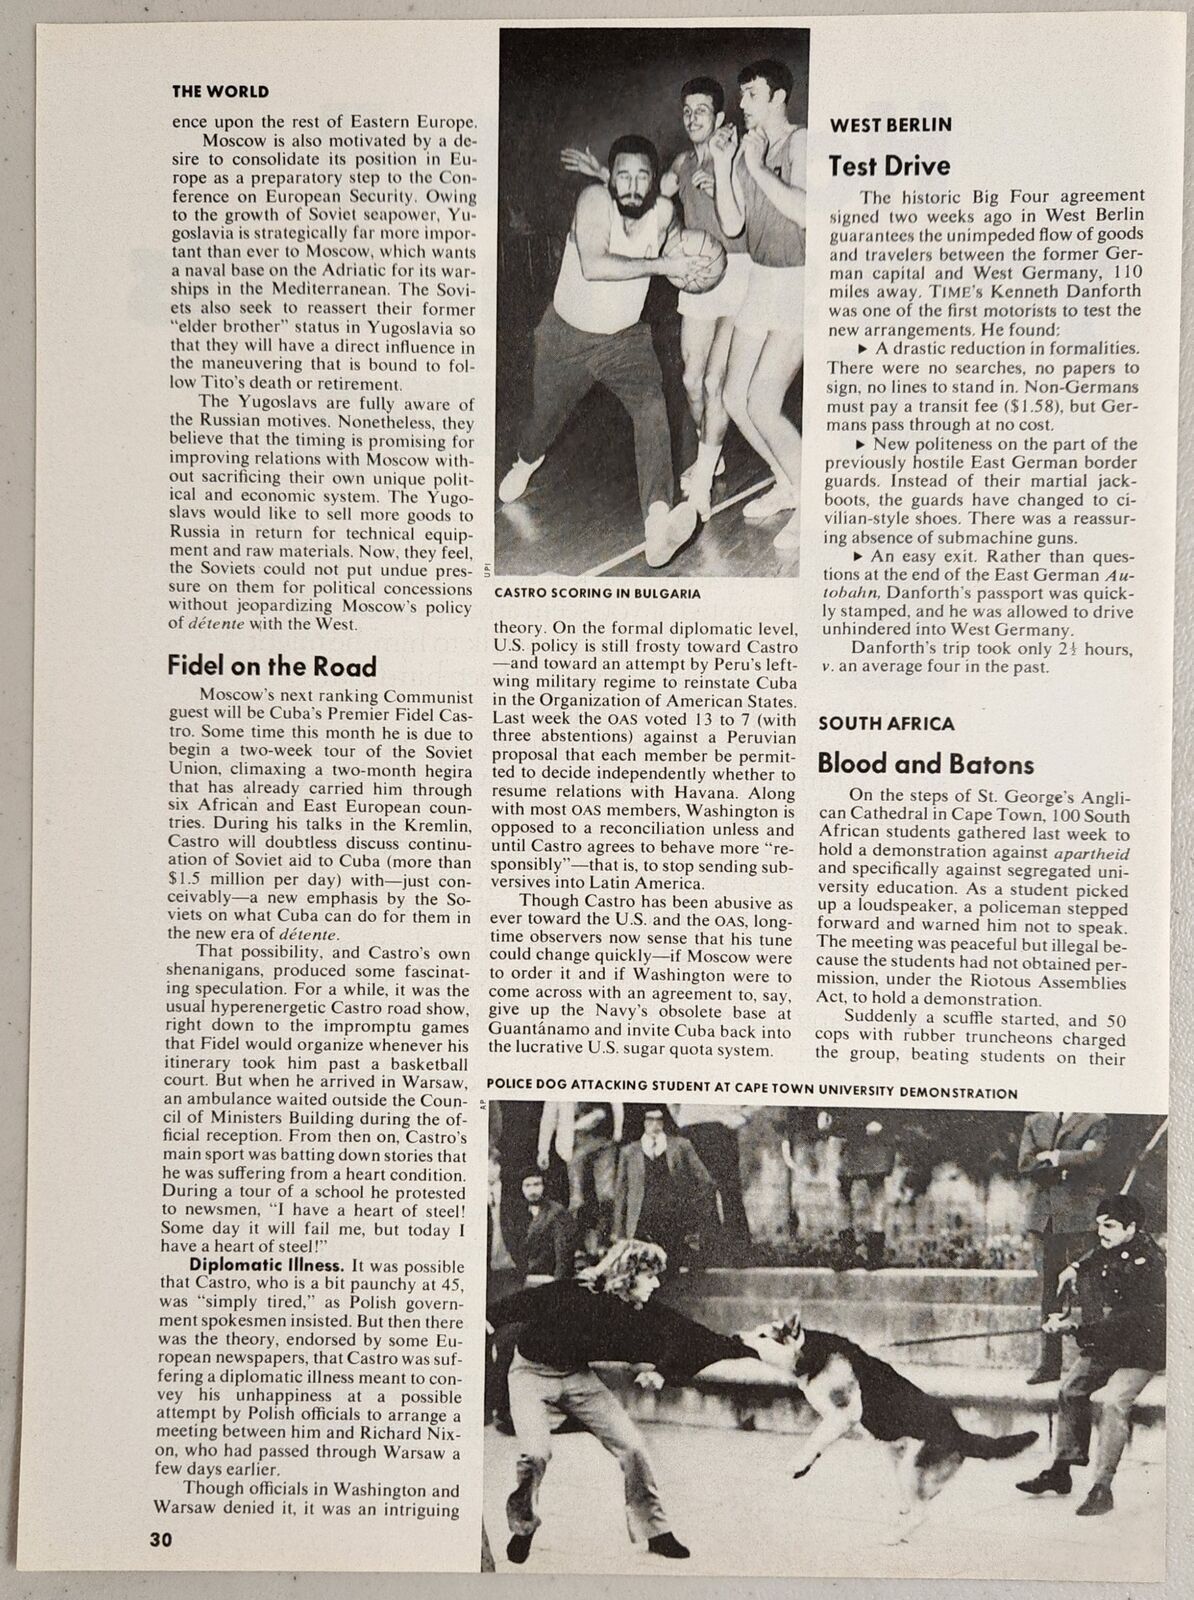 1972 Magazine Photo Article Fidel Castro Cuba Plays Basketball in Bulgaria